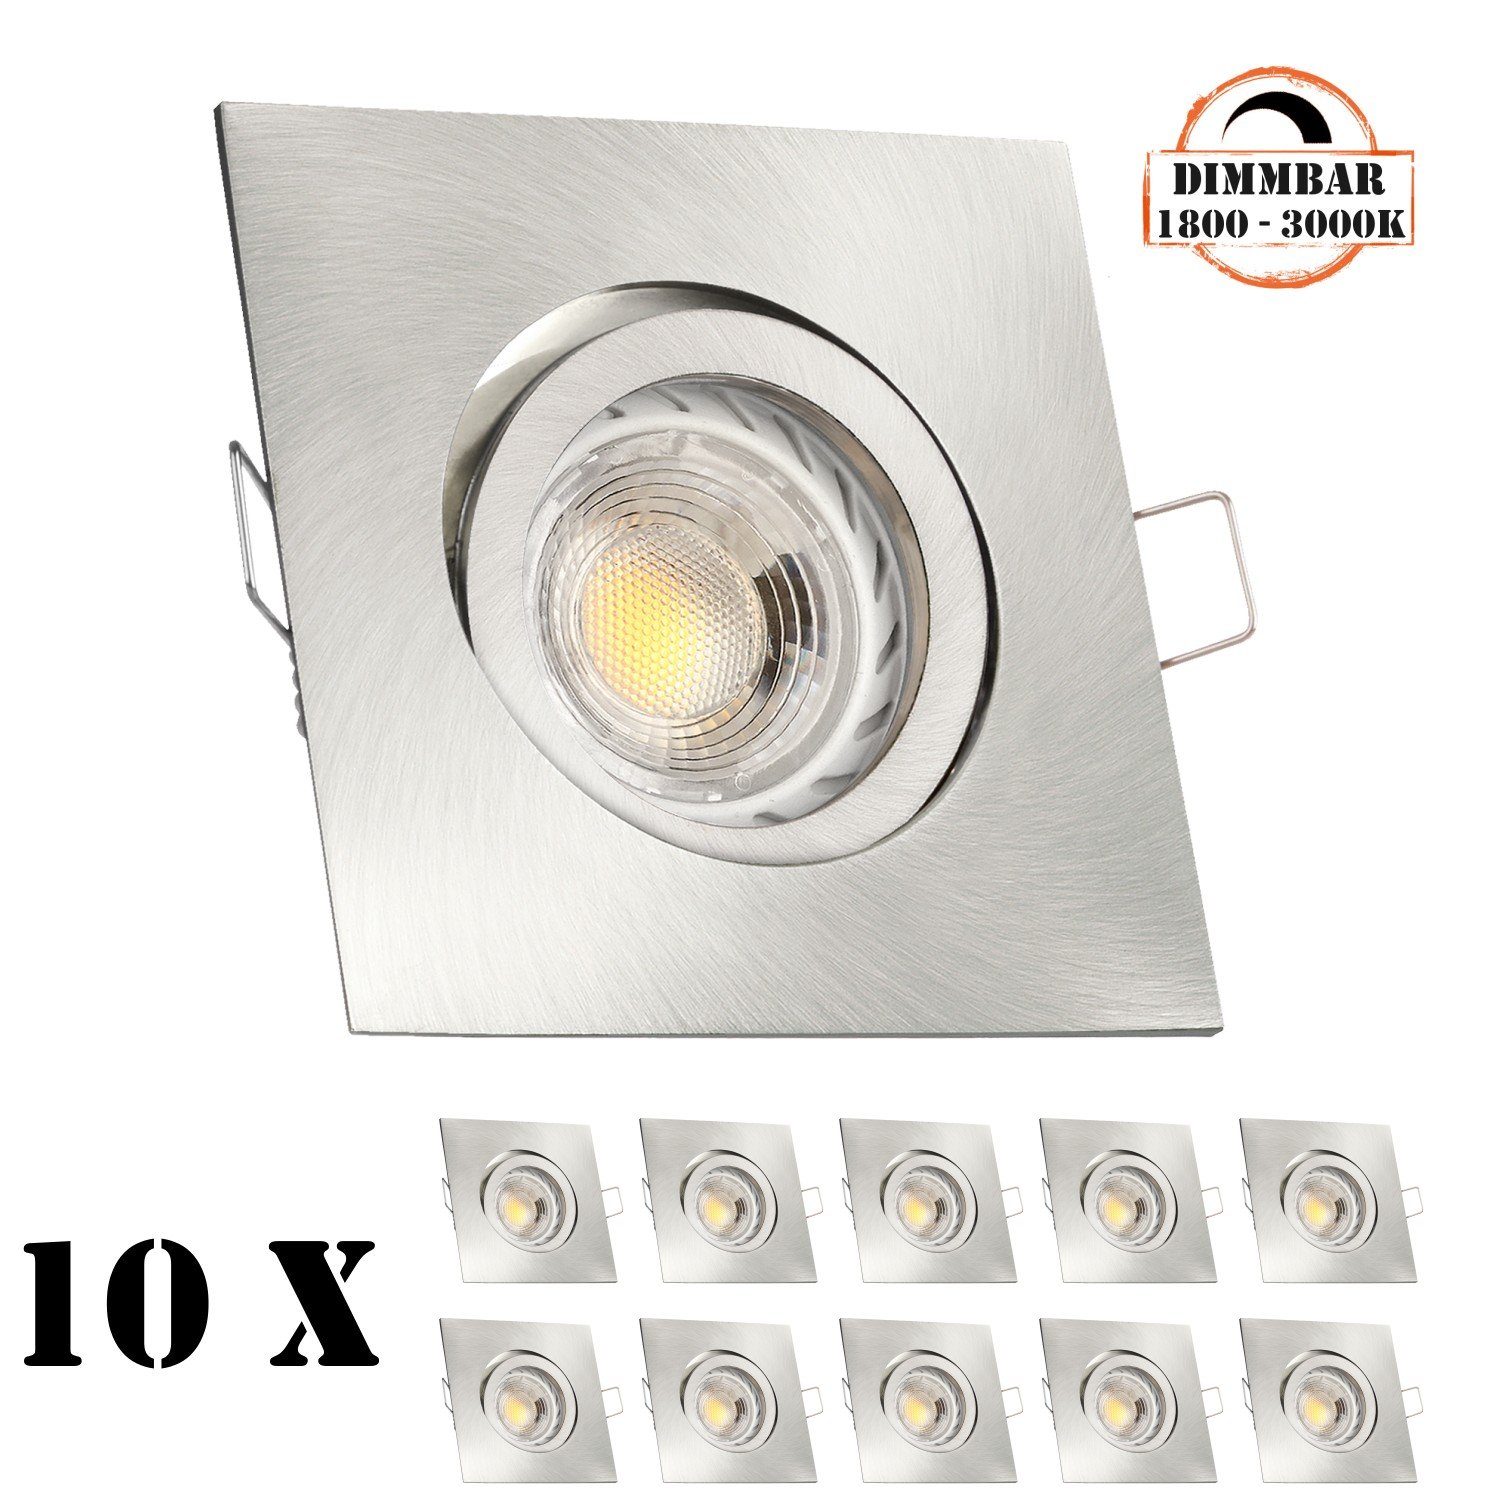 LEDANDO LED Einbaustrahler 10er LED Einbaustrahler Set GU10 in edelstahl / silber gebürstet mit 5